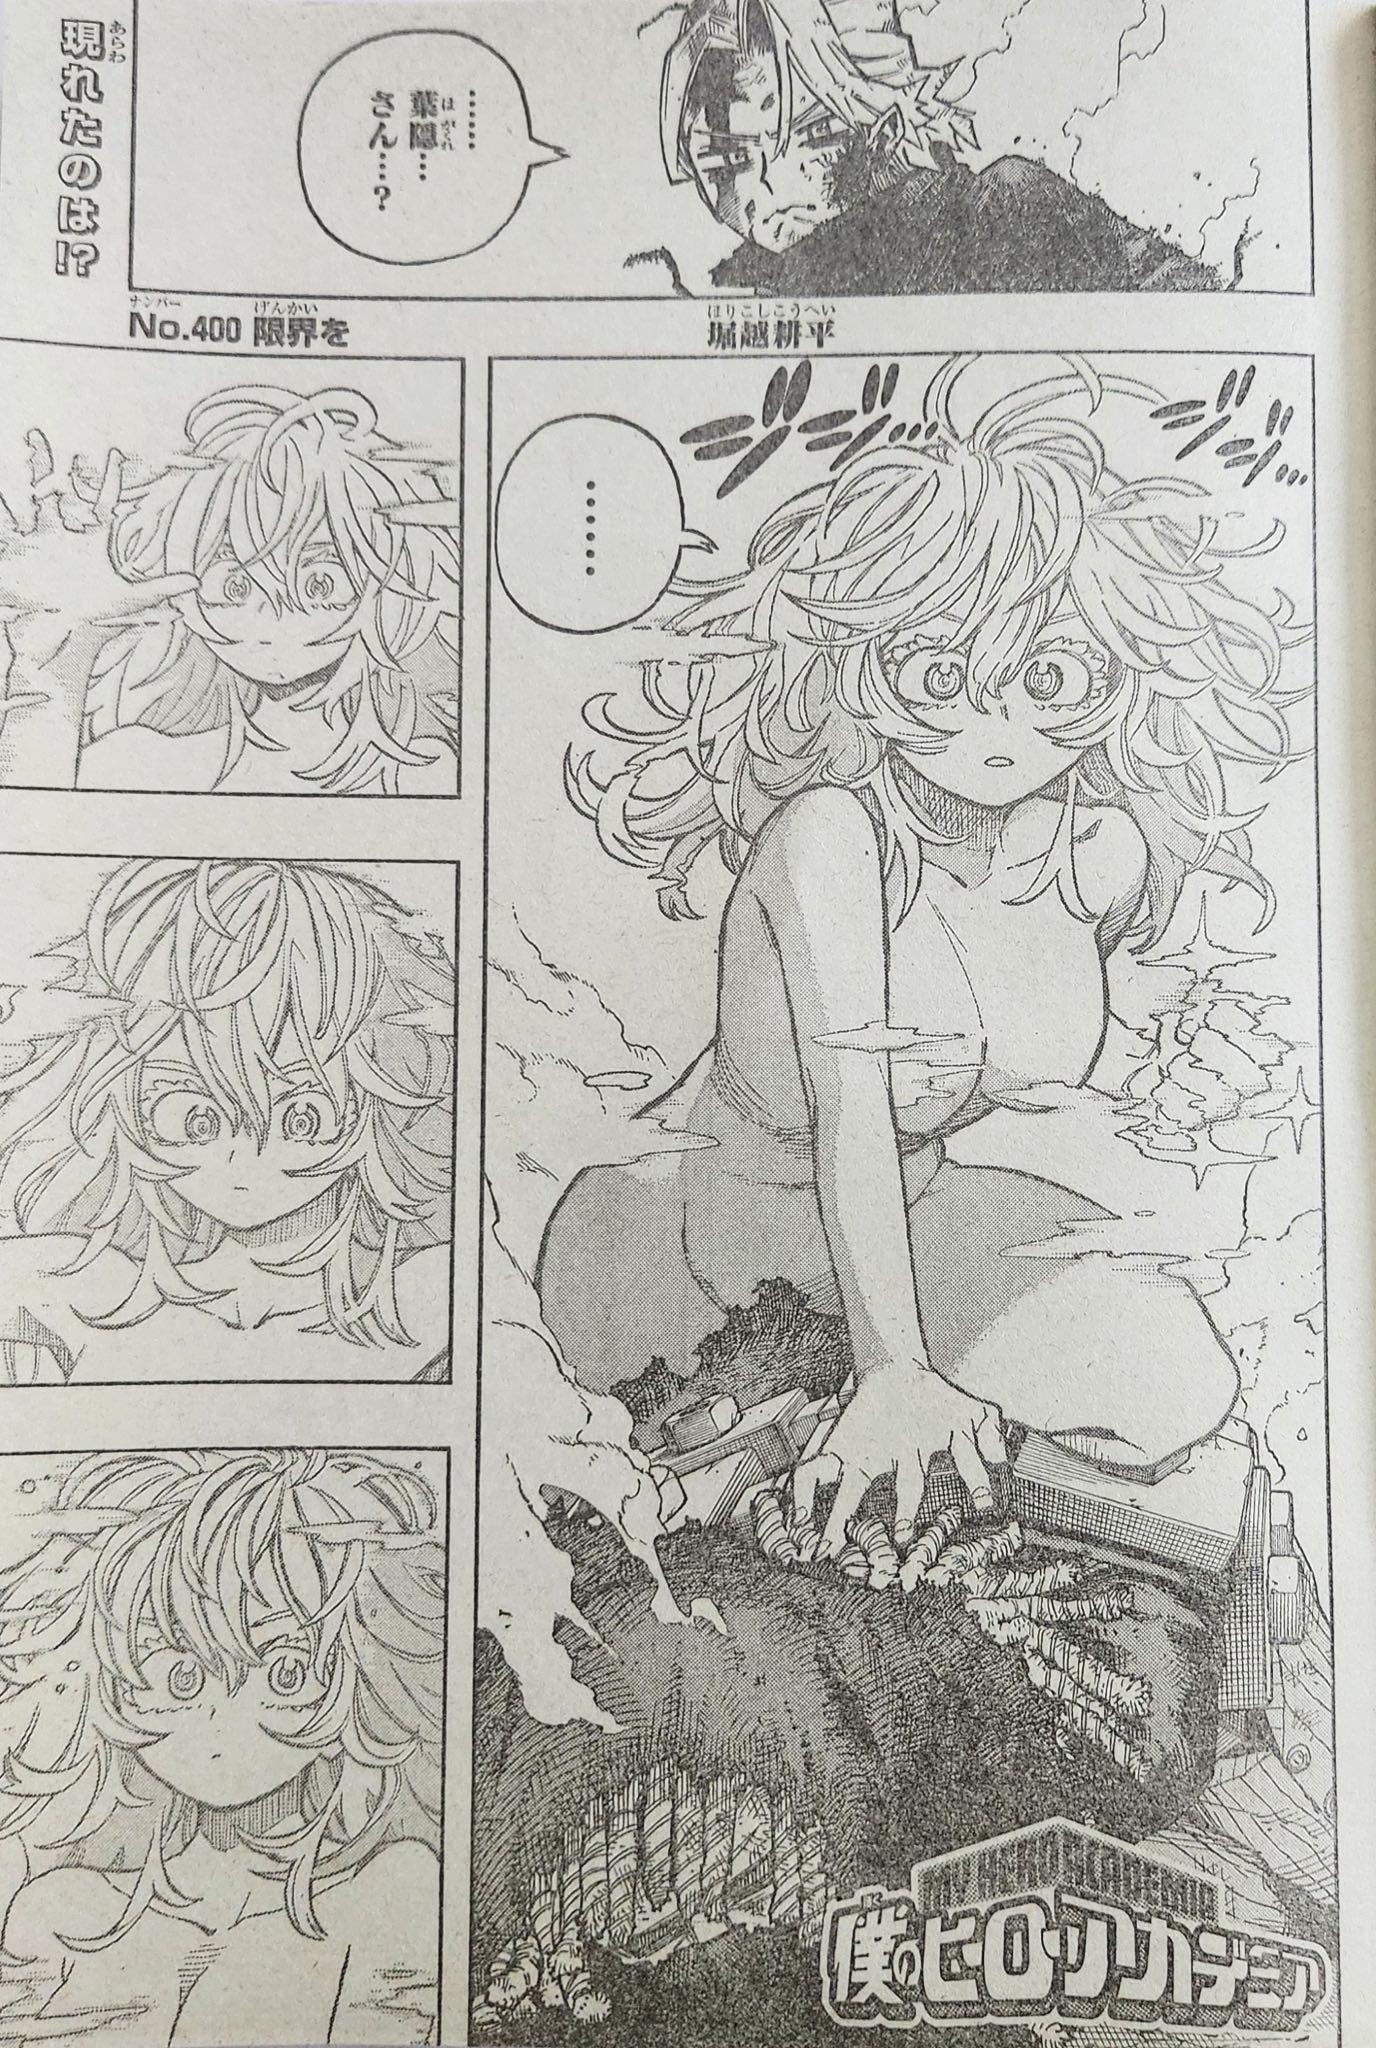 Invisible Girl siendo visible en el capítulo 400 del manga